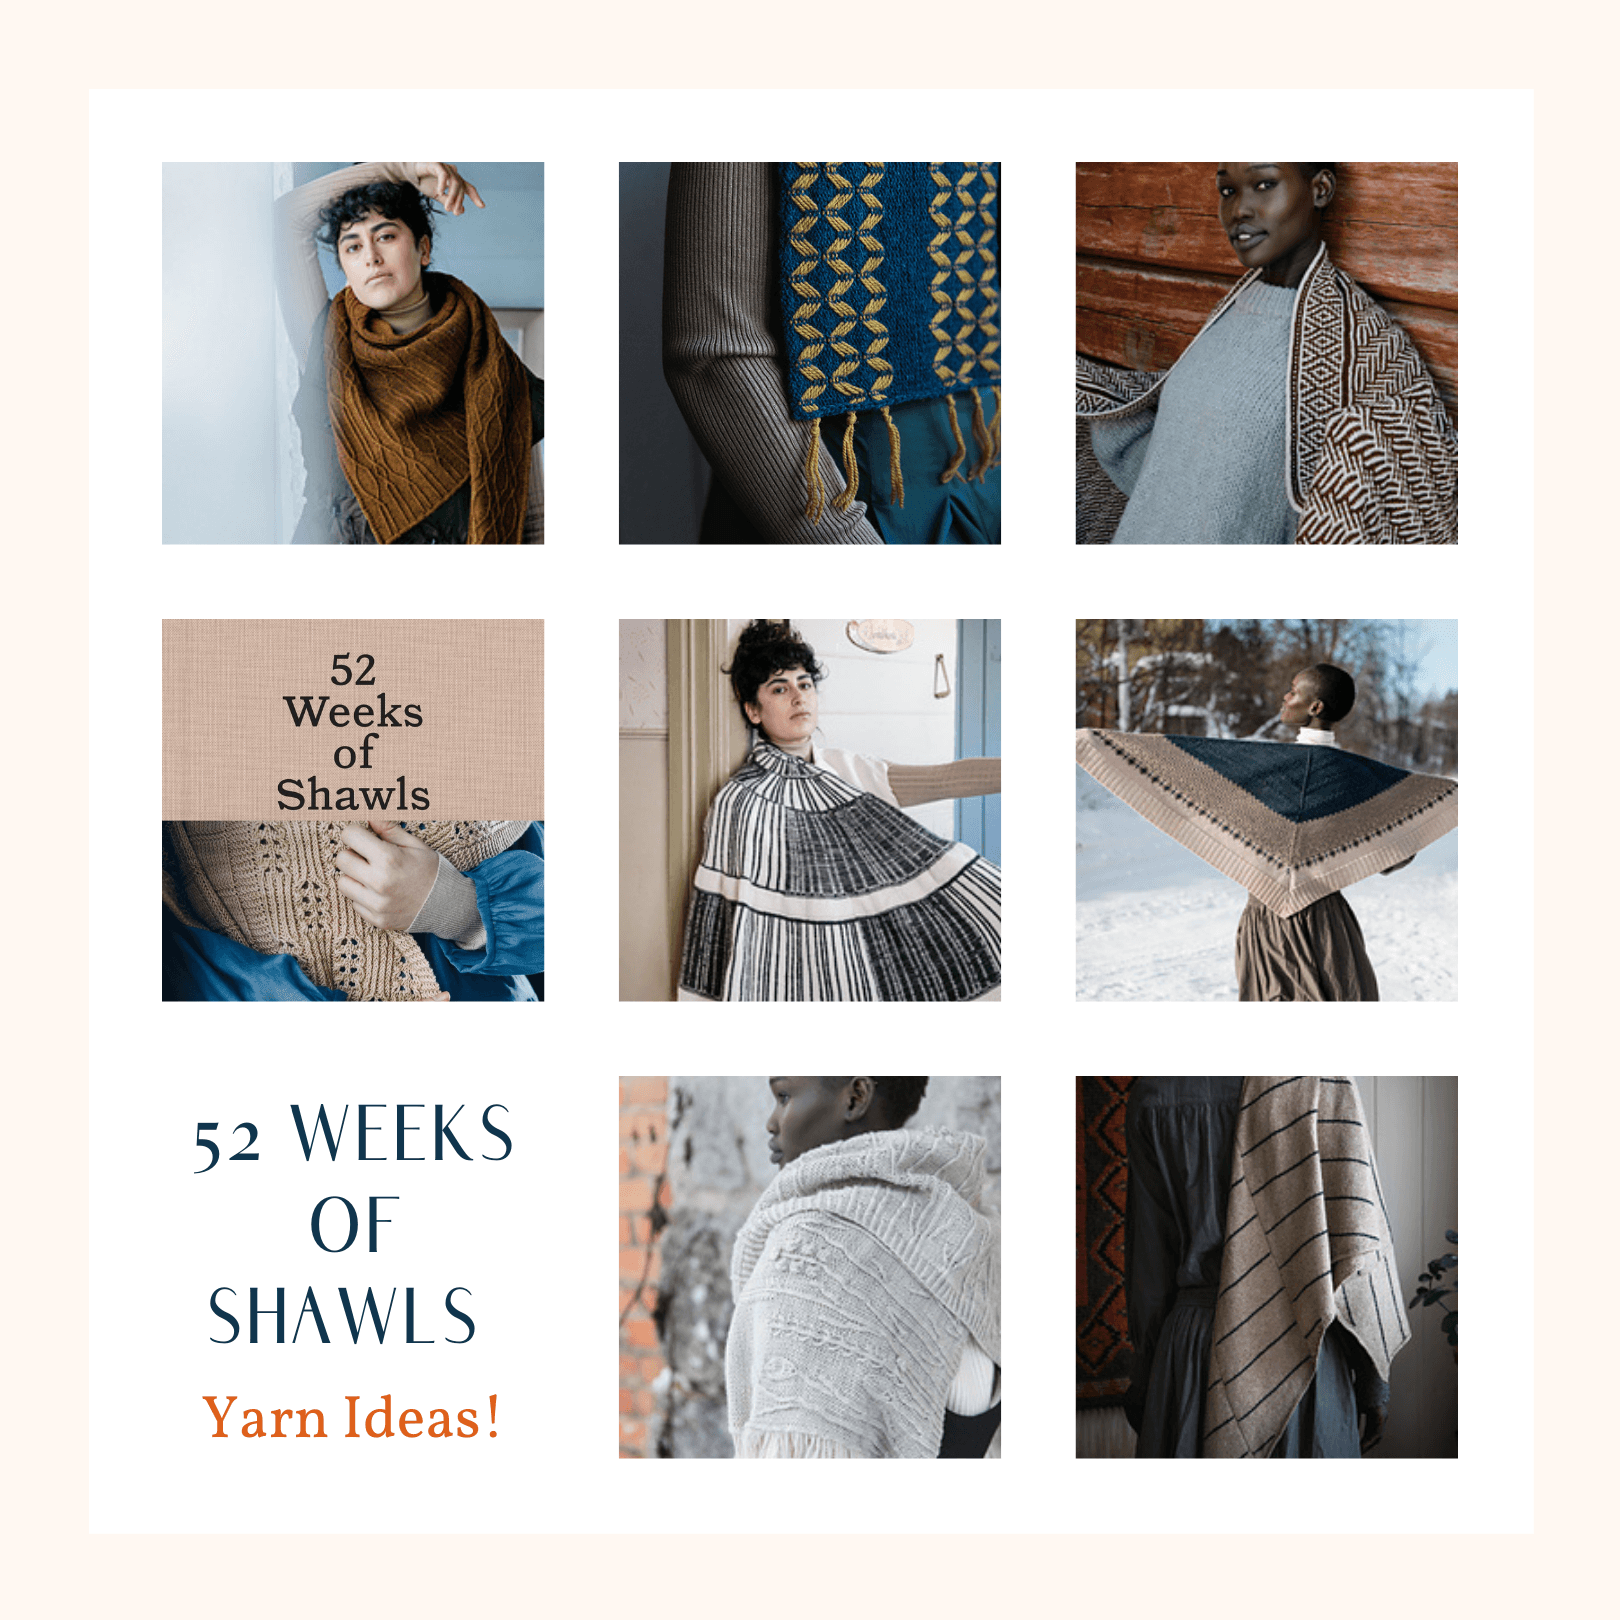 52 Weeks of Shawls - Yarn Ideas